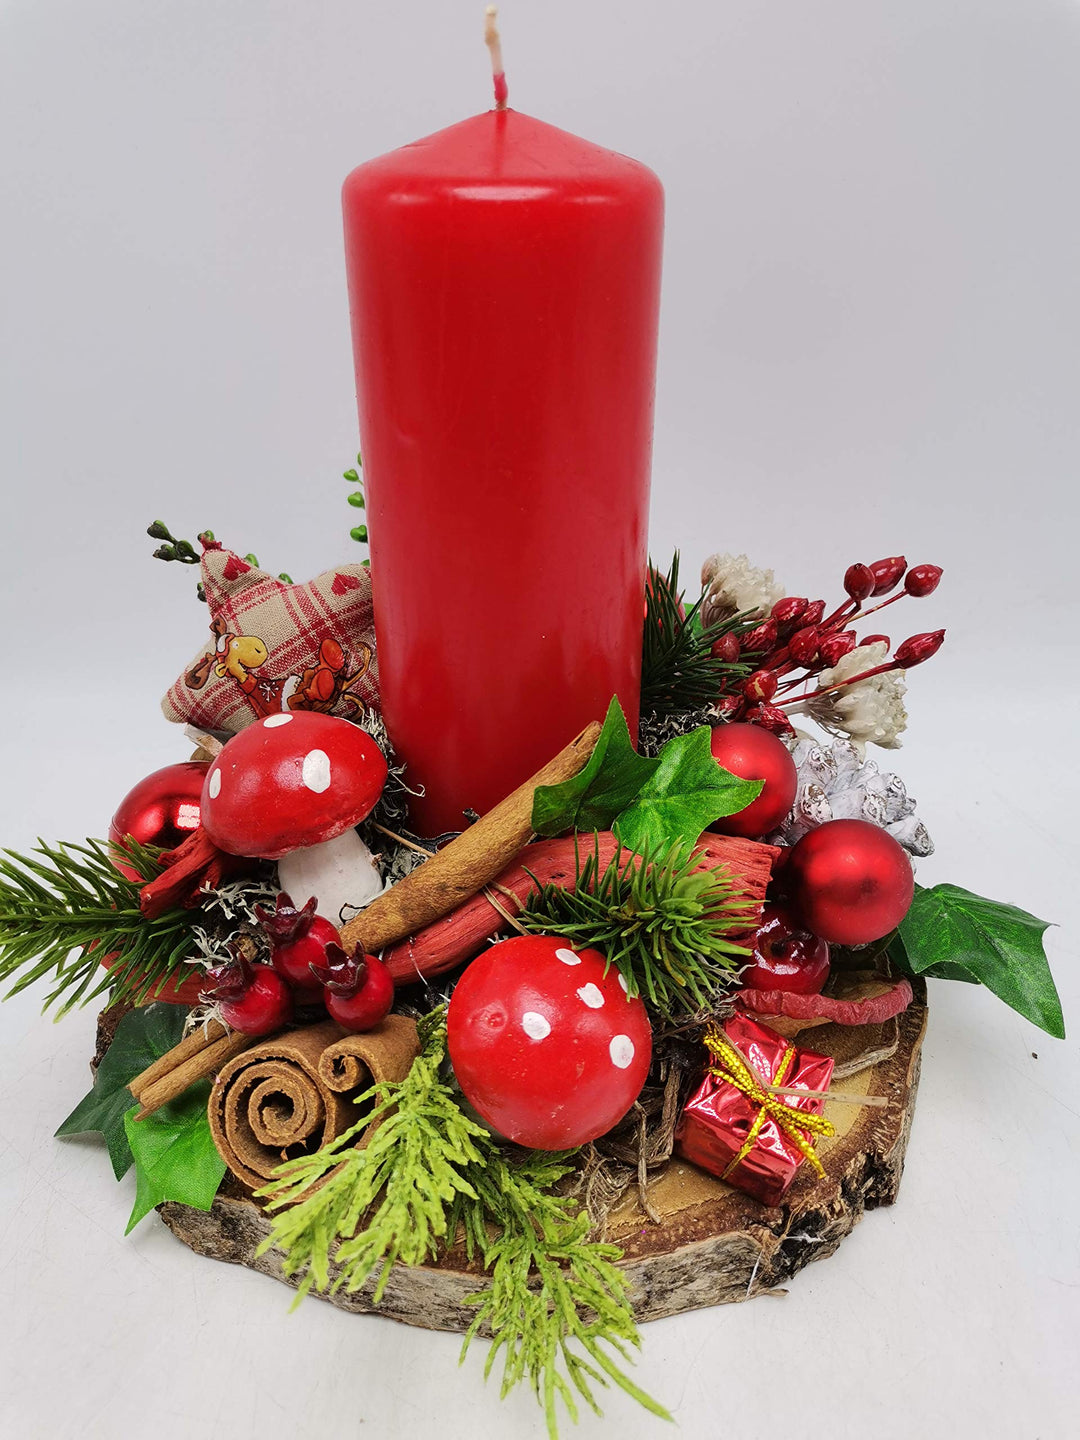 Weihnachtsgesteck Adventsgesteck Wintergesteck Kerze Pilze Kugeln Beeren rot